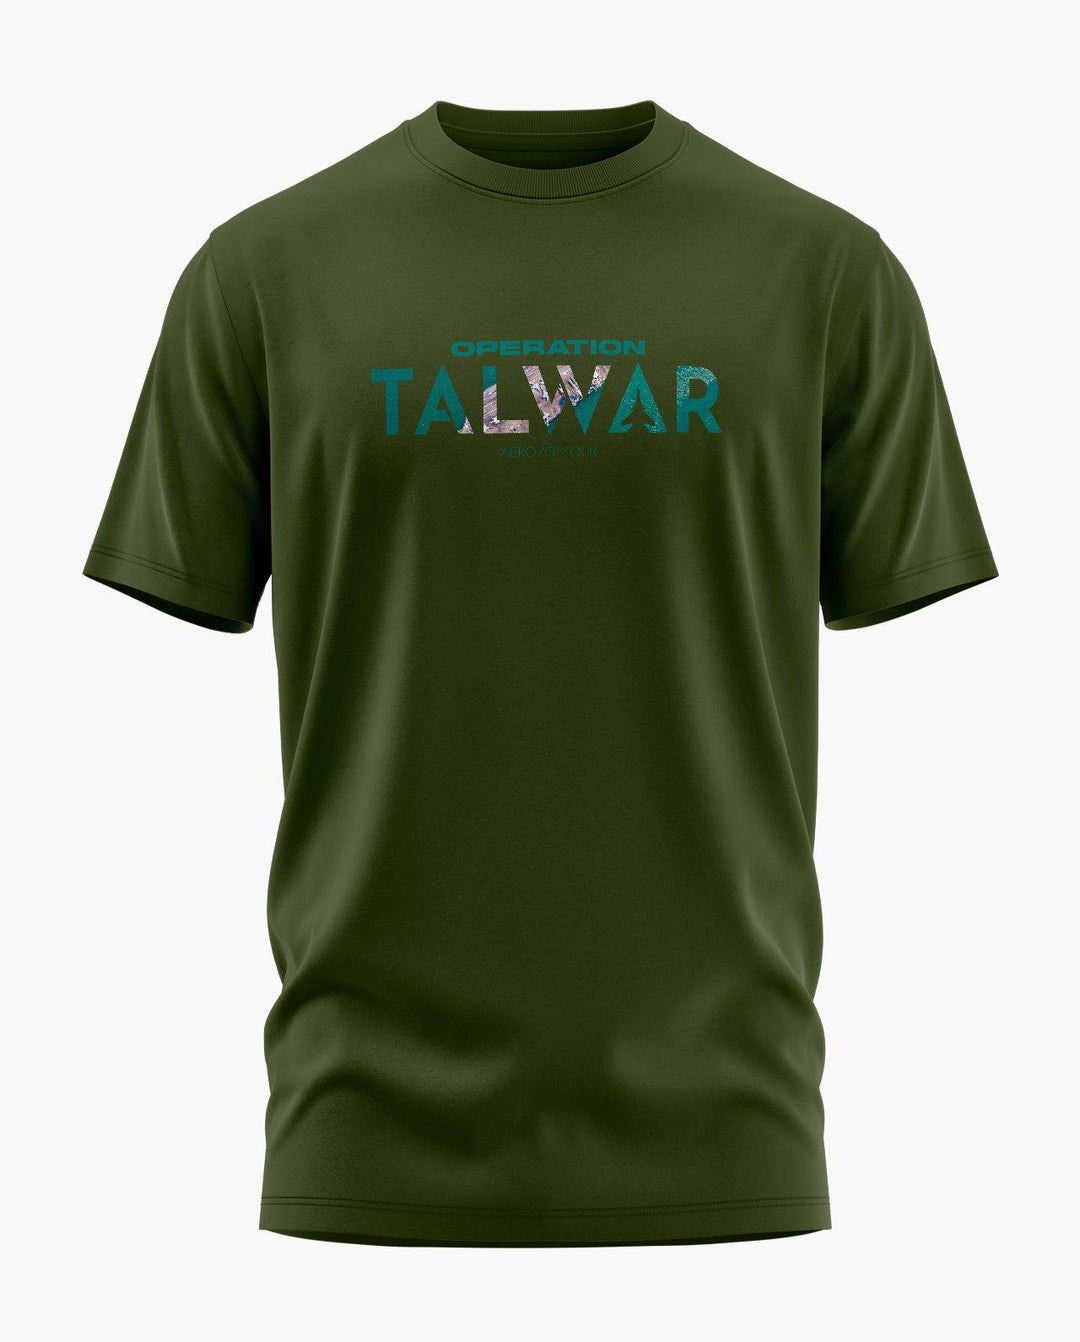 Operation Talwar T-Shirt - Aero Armour